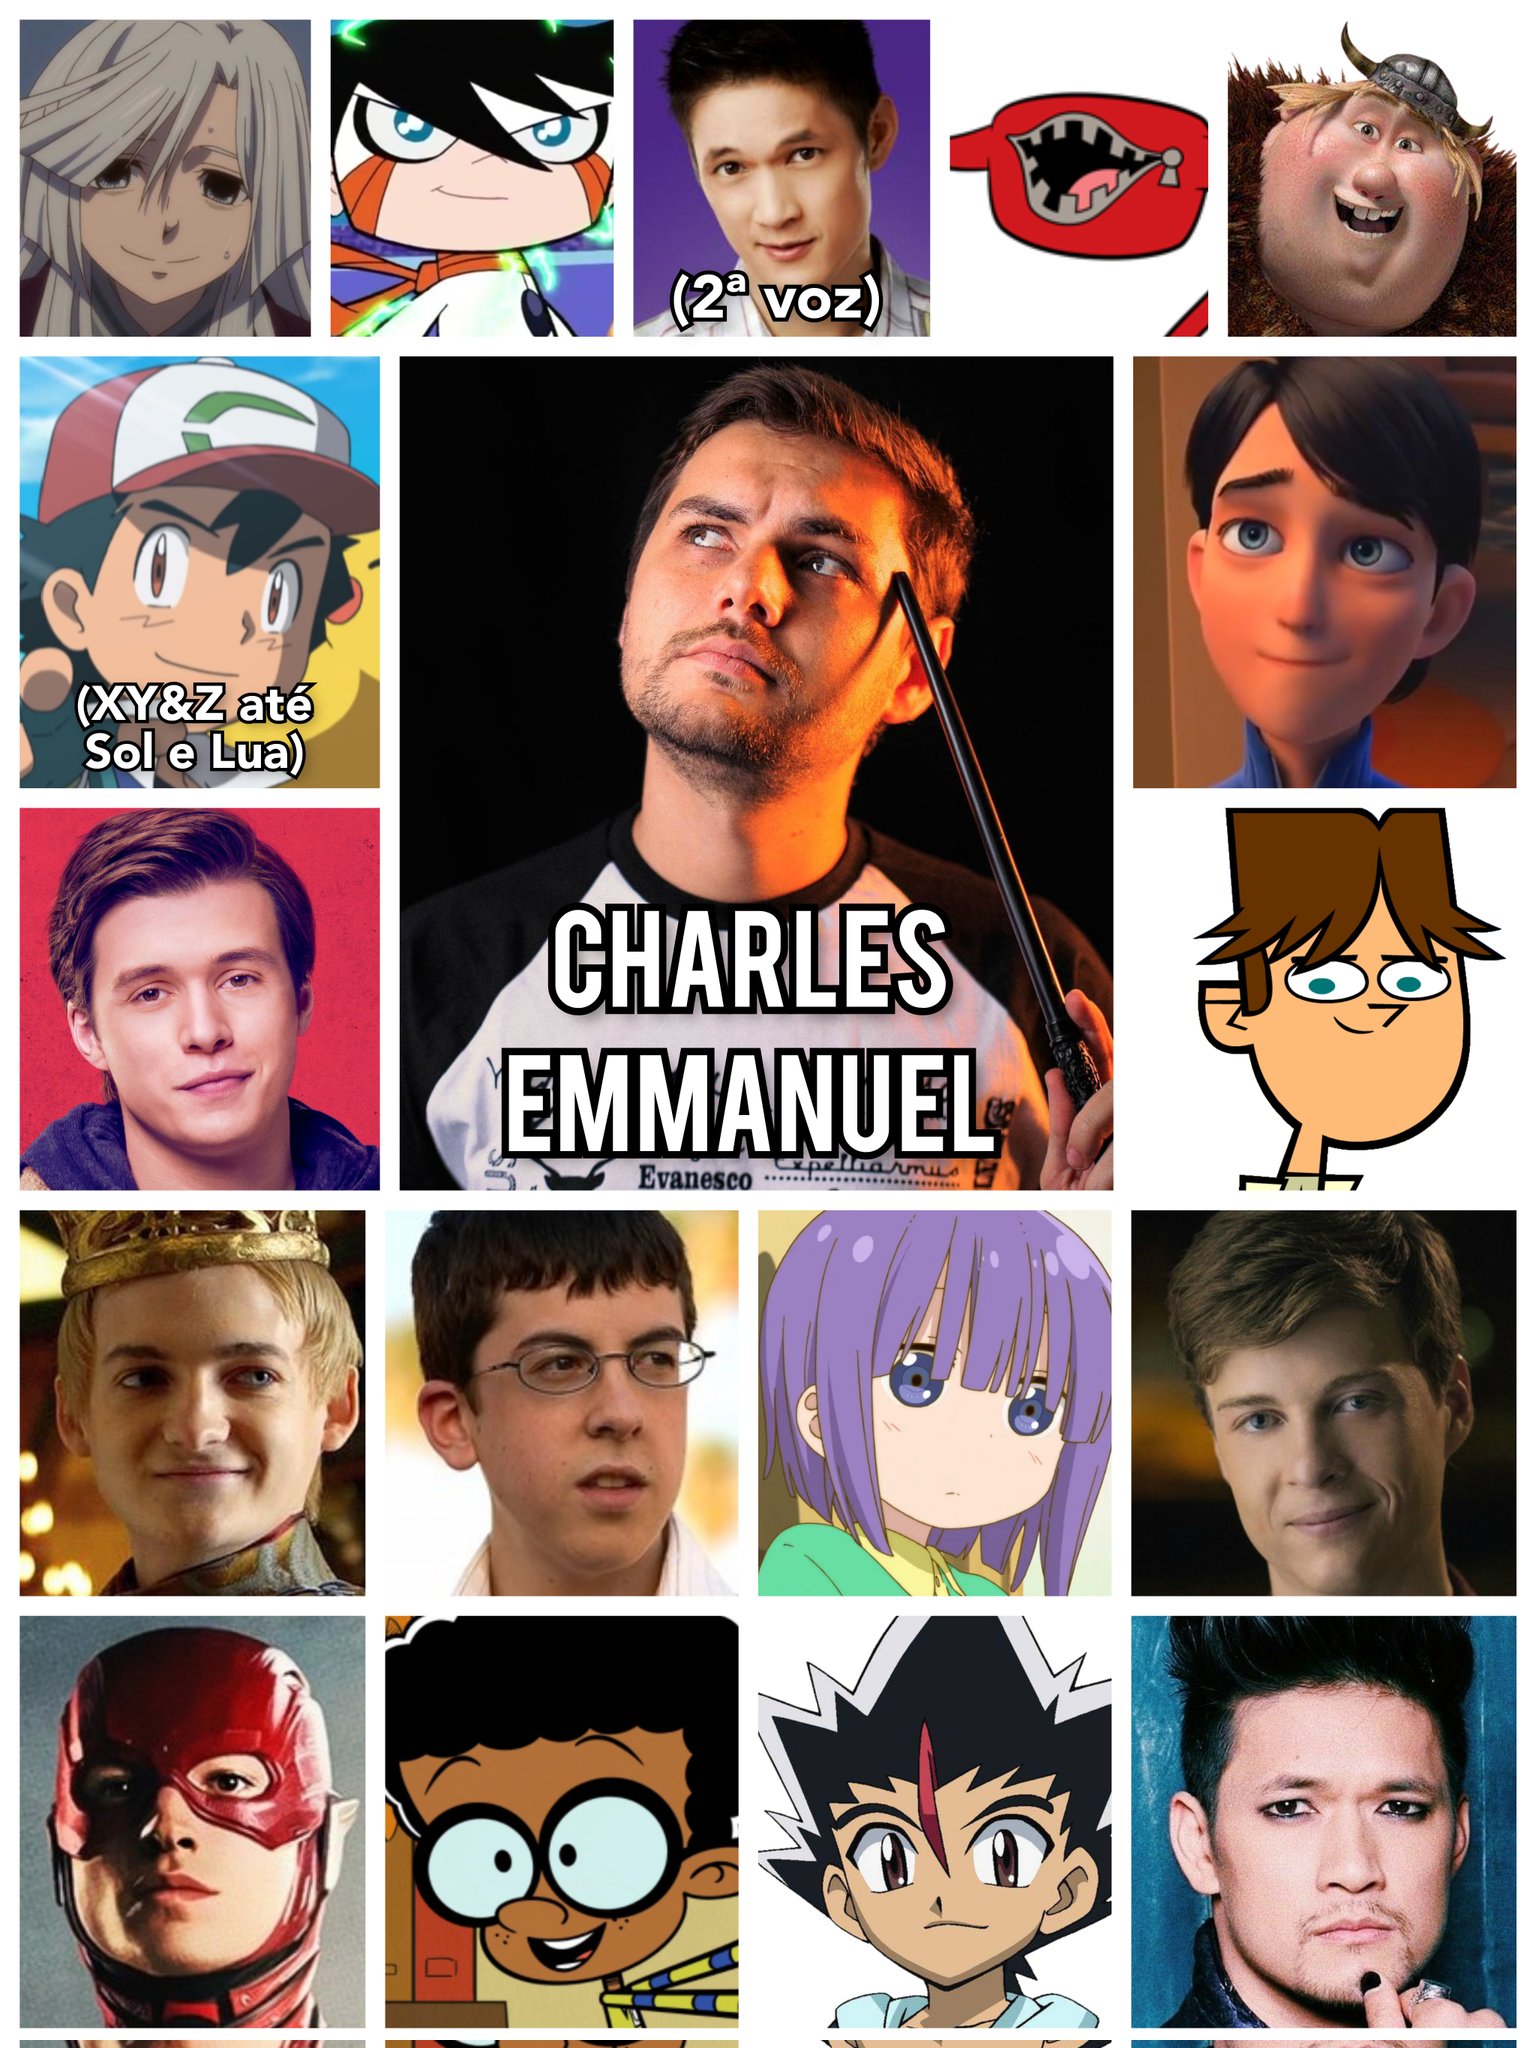 Personagens Com os Mesmos Dubladores! on X: Finalmente Charles Emmanuel  tem um protagonista de anime após tanto tempo! mas a que custo? LKKKK  Zoas, tô curioso pela dublagem agora! / X